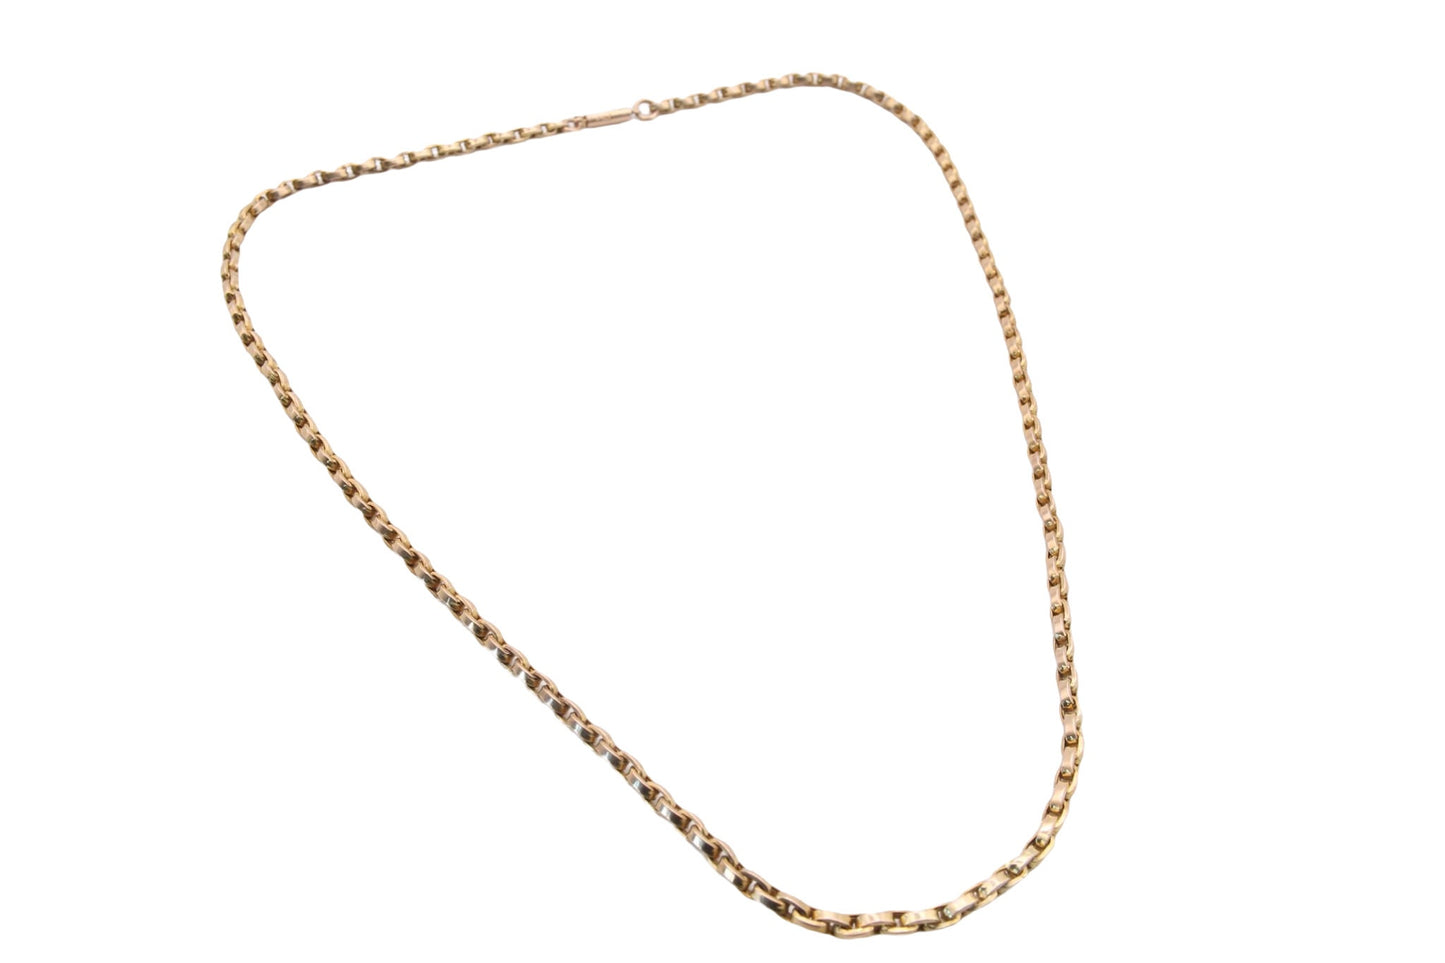 Antique 9ct Gold Belcher Link Necklace, 7g